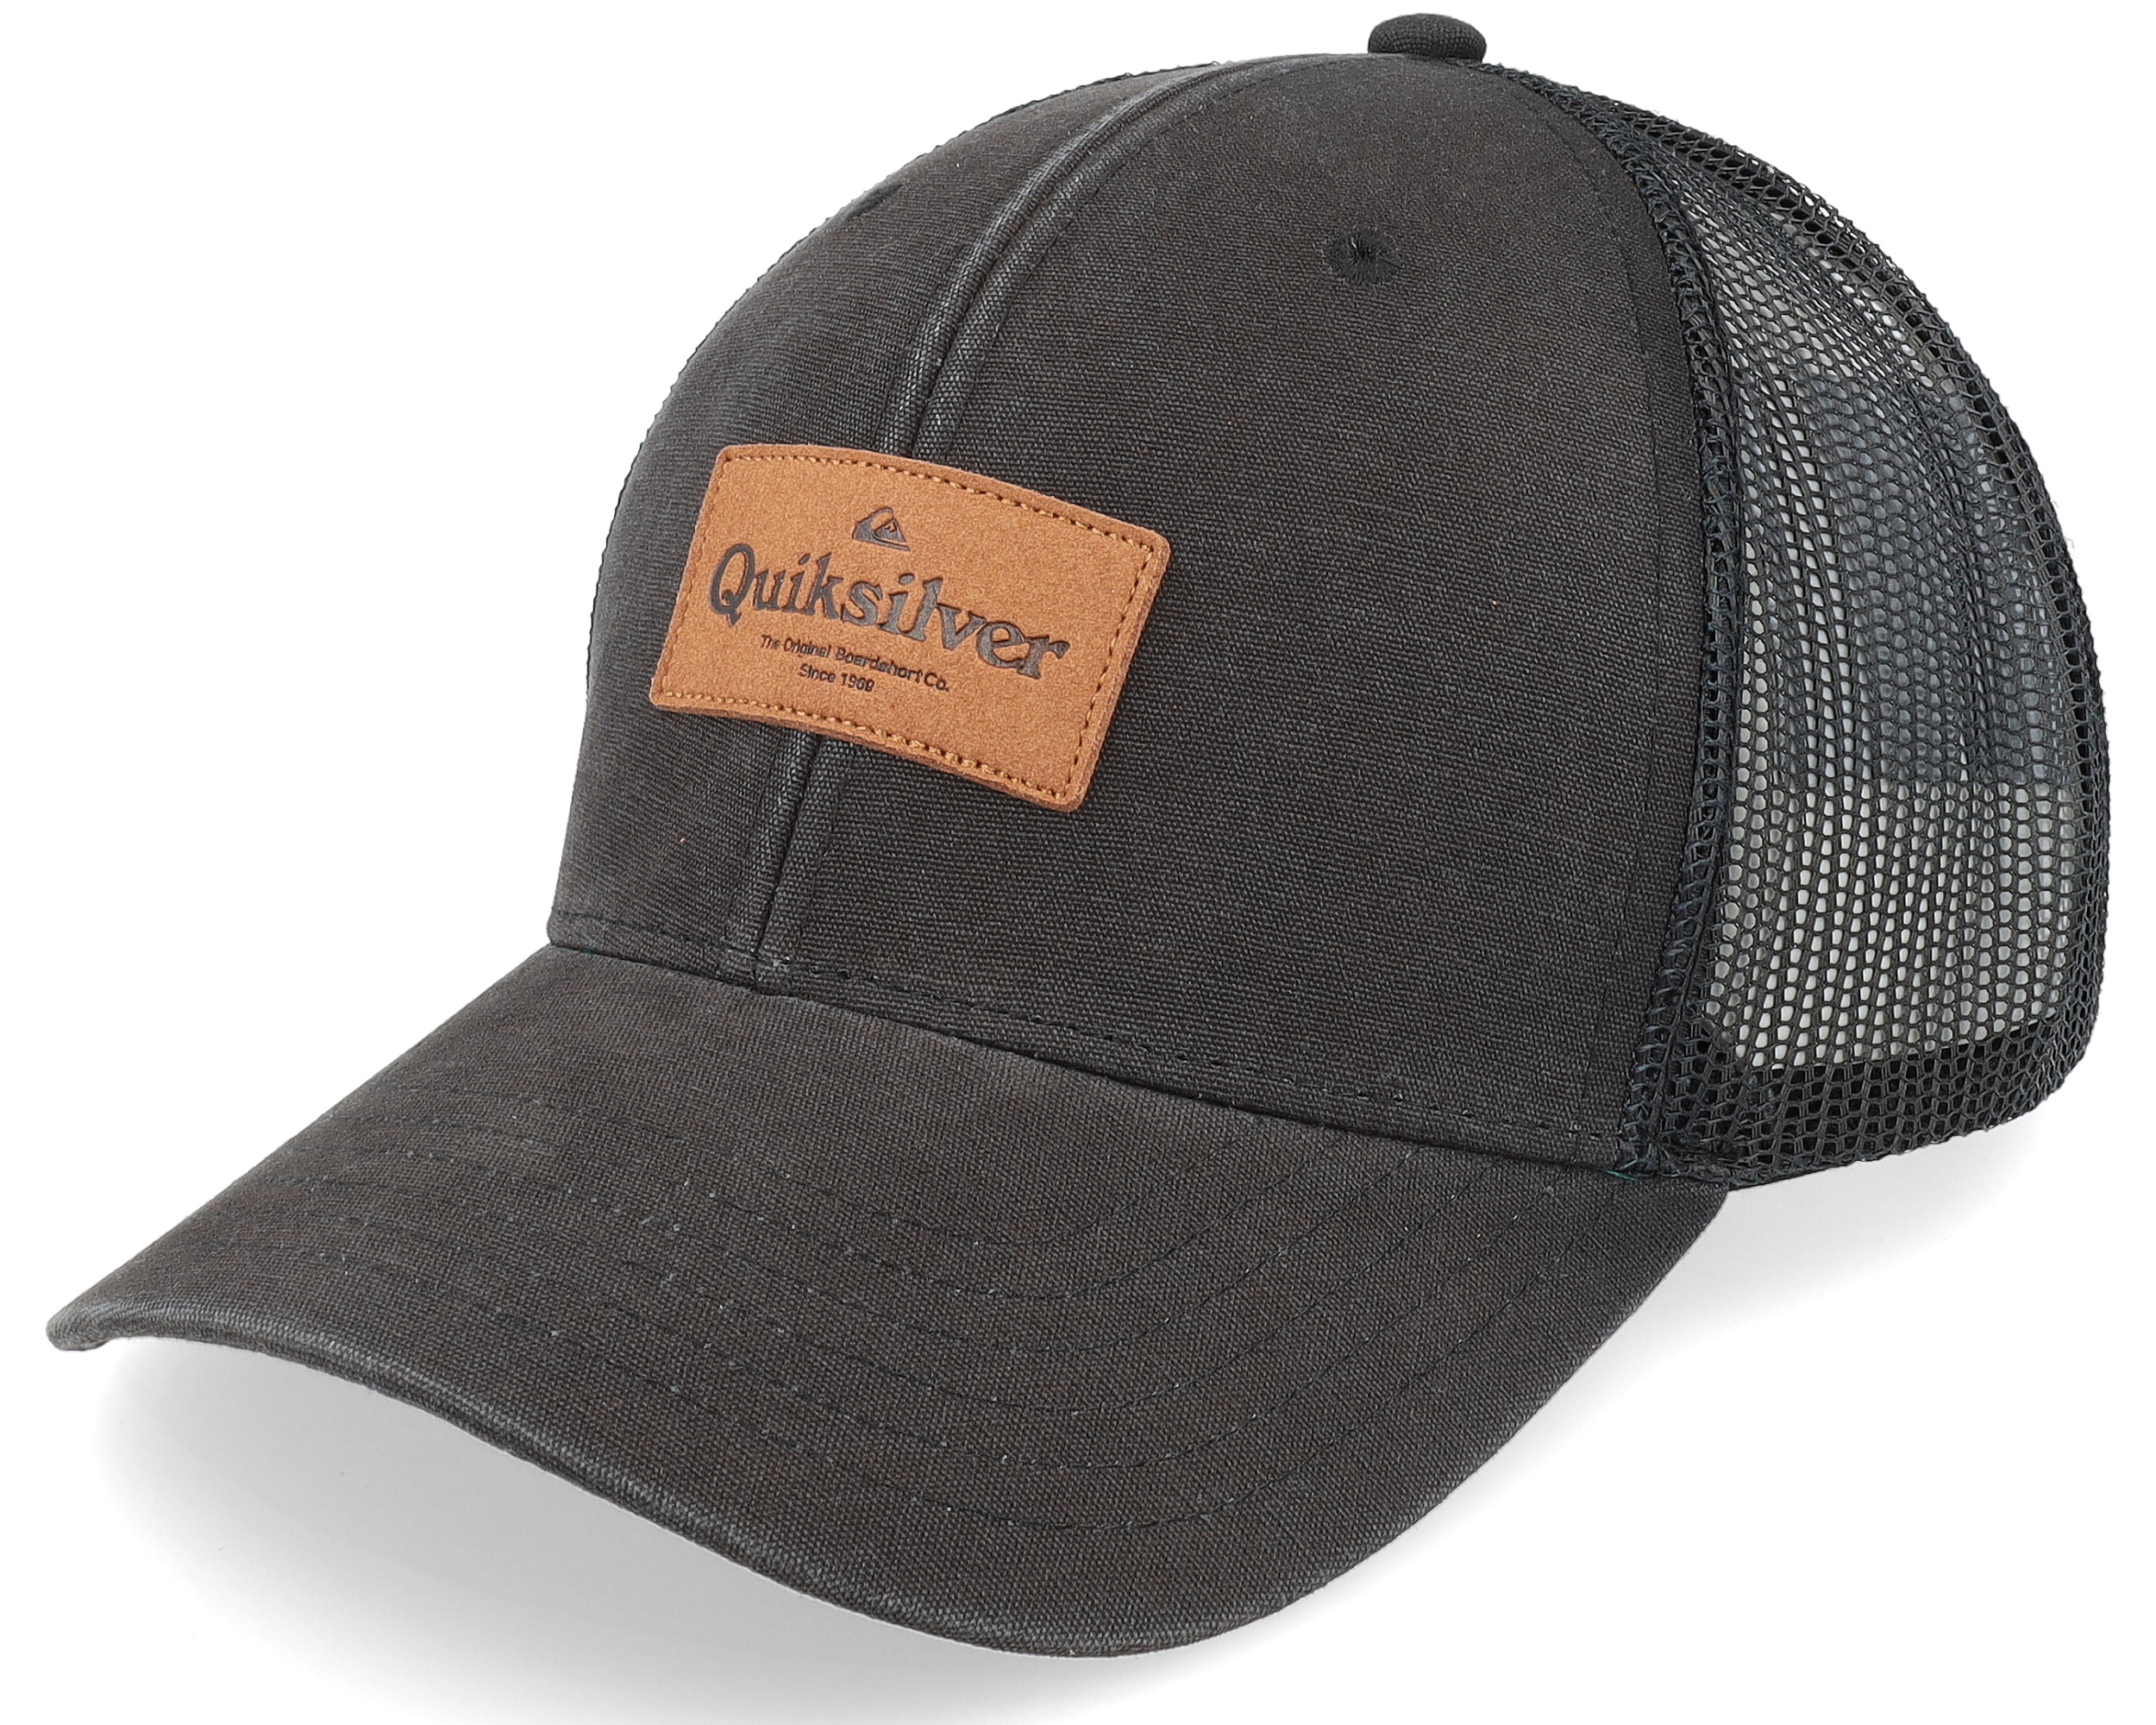 Reek Easy Quiksilver Black - Trucker cap